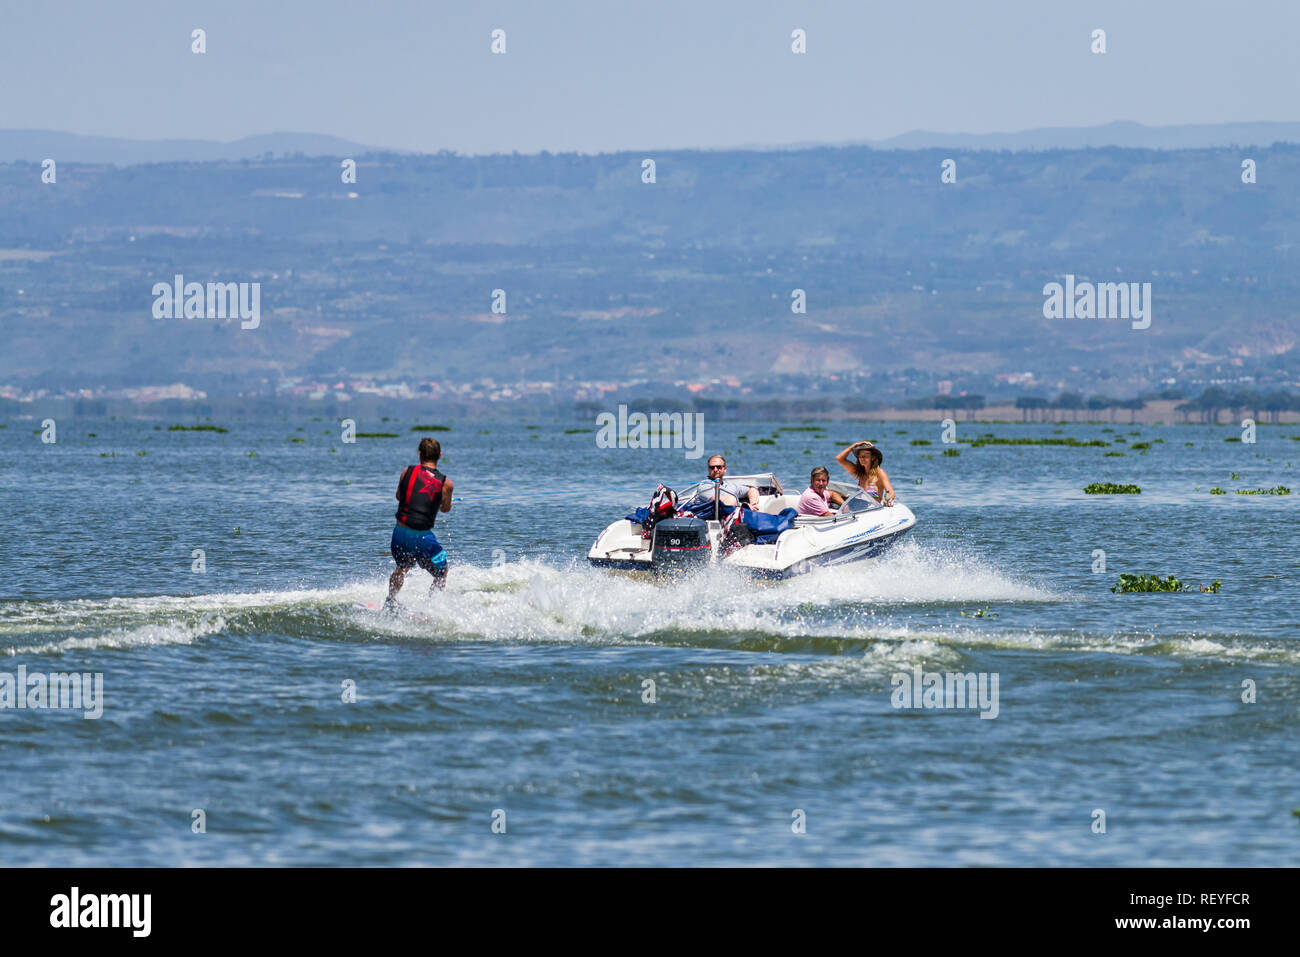 A Caucasian man wakeboarding behind a powerboat as passengers watch him, Lake Naivasha, Kenya Stock Photo